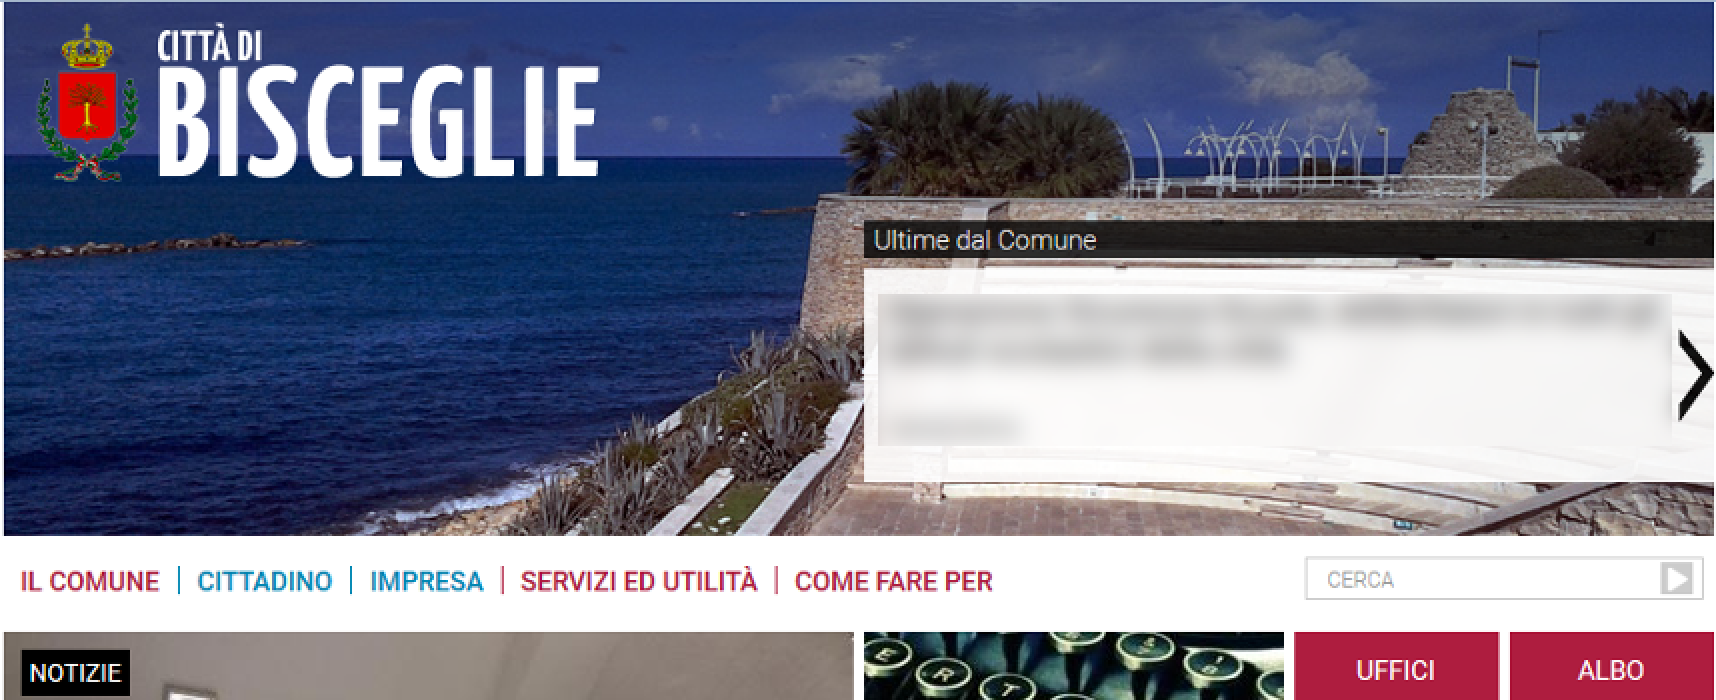 Online il nuovo sito web del Comune realizzato in collaborazione con la Provincia di Brescia